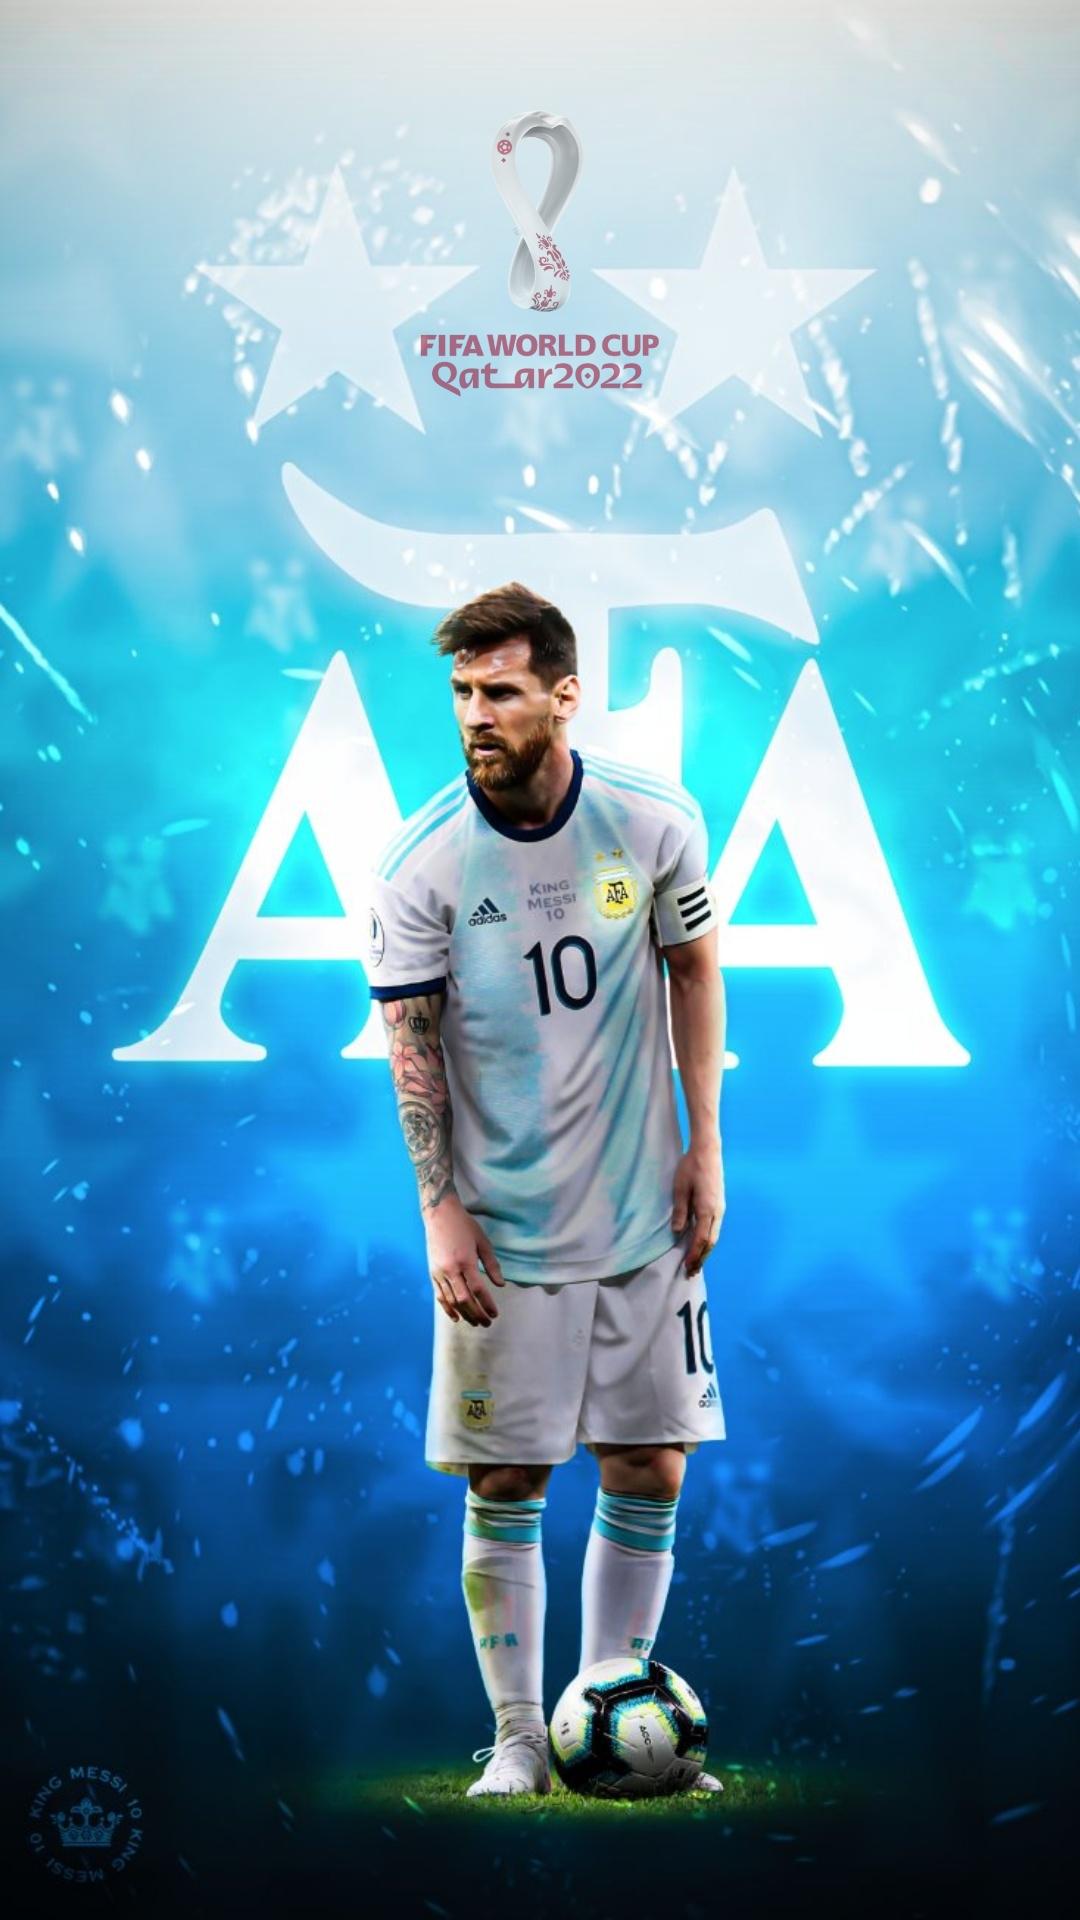 Đây là hình nền Messi tại World Cup mà bạn không thể bỏ lỡ, đặc biệt nếu bạn yêu thích bóng đá và muốn cảm nhận lại khoảnh khắc đầy cảm xúc khi Argentina thi đấu tại World Cup. Nhận ngay hình nền này và cùng chào đón những kỳ World Cup sắp đến.